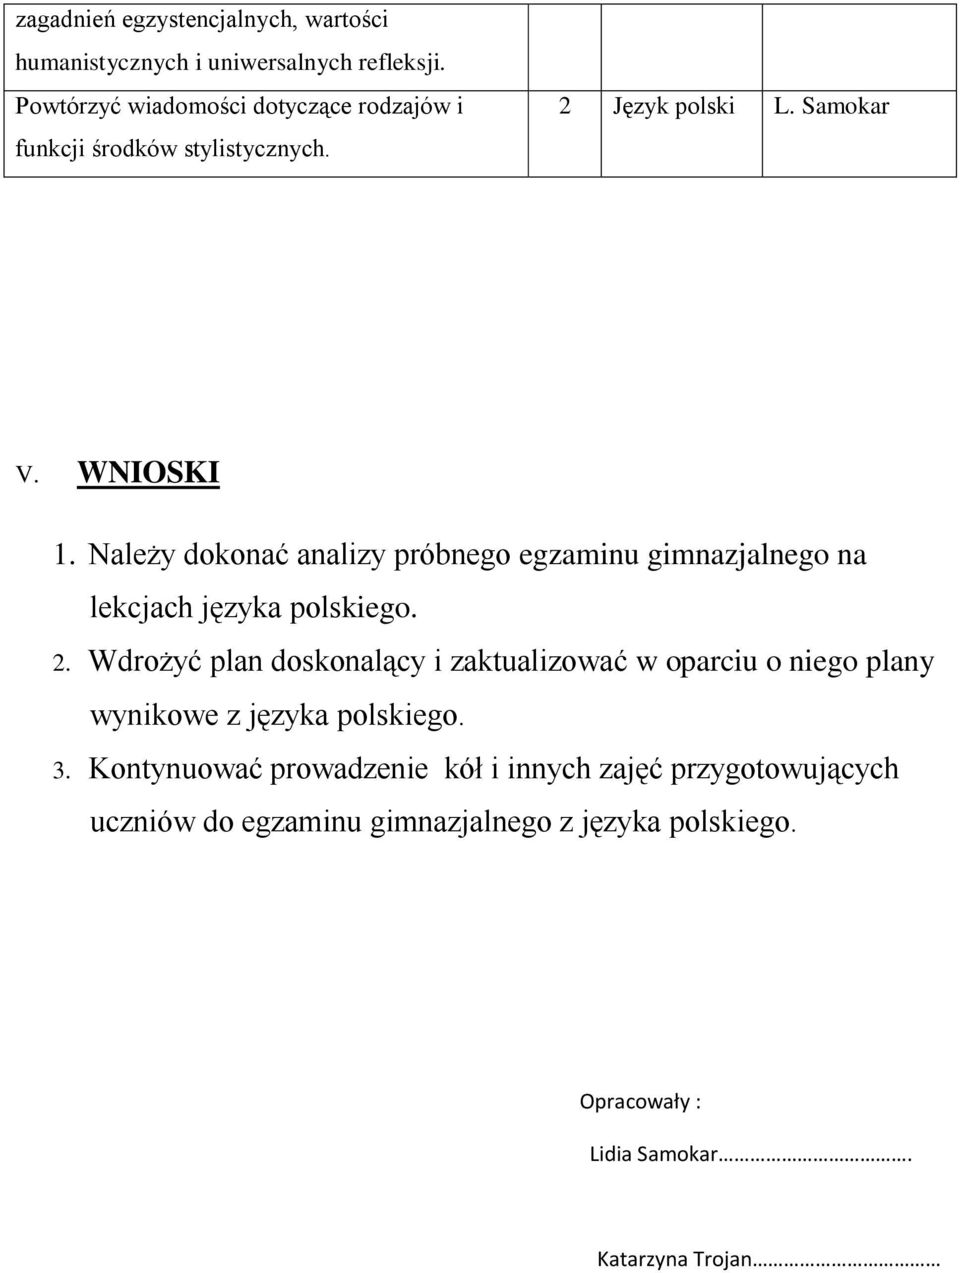 Należy dokonać analizy próbnego egzaminu gimnazjalnego na lekcjach języka polskiego. 2.